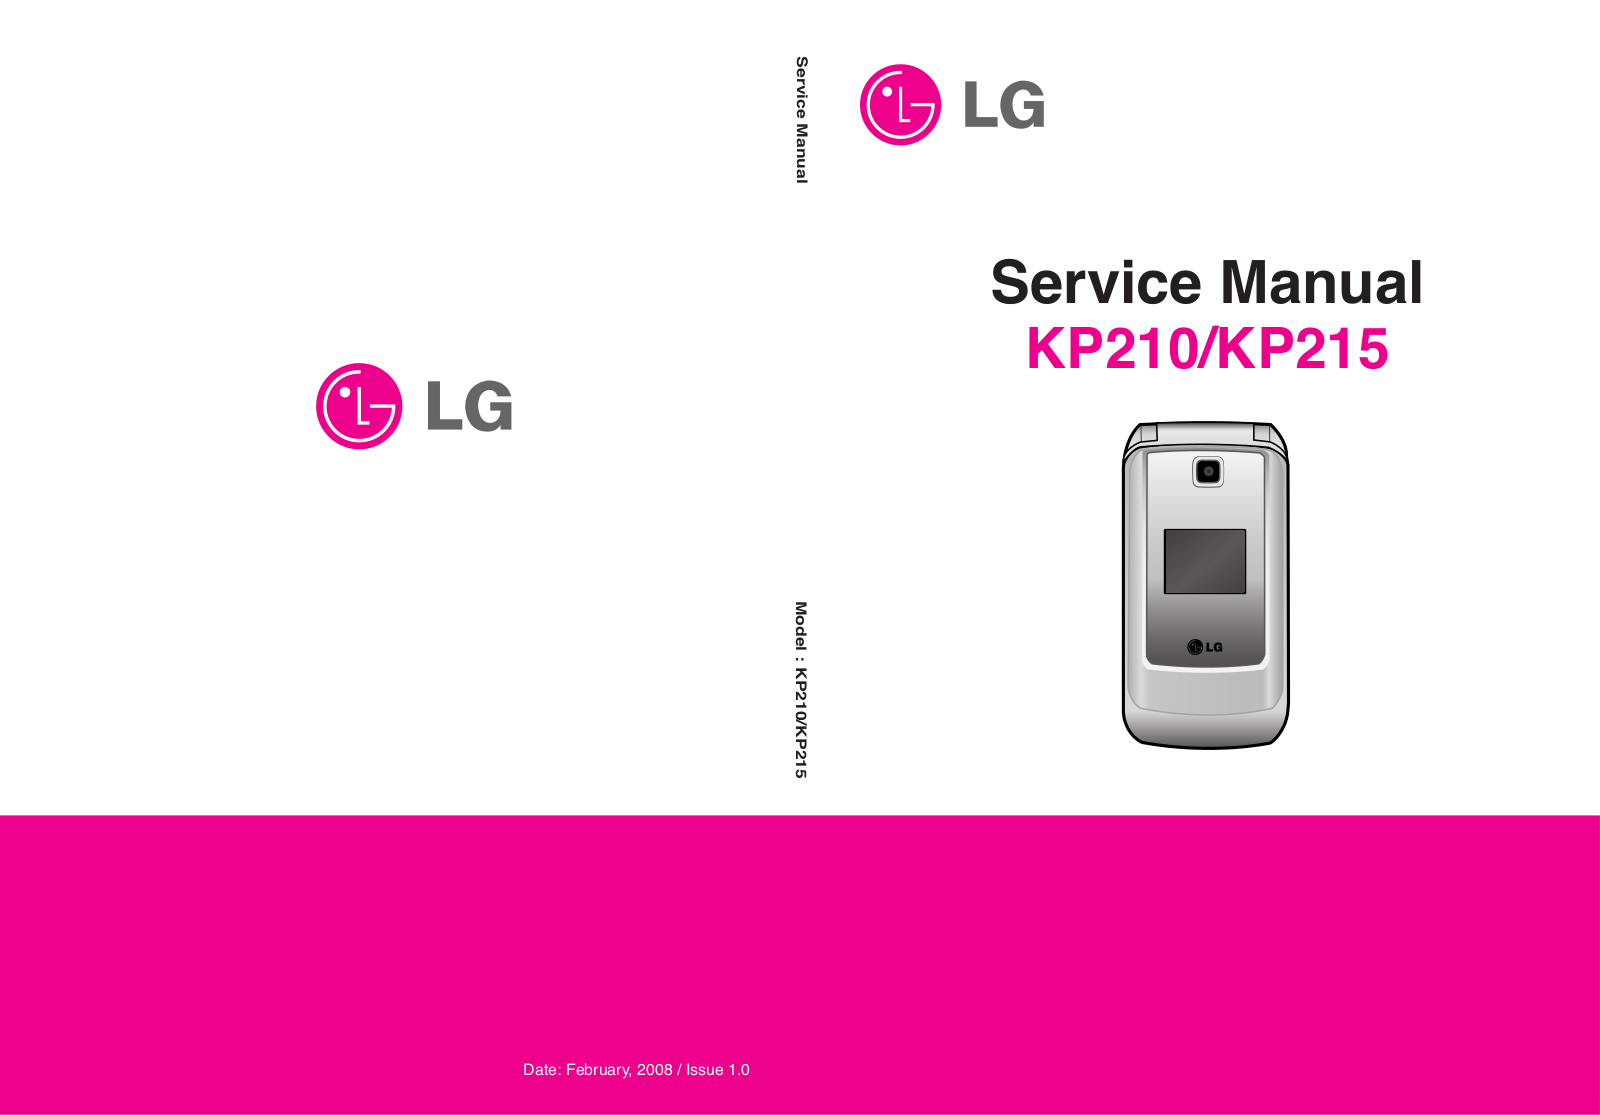 LG KP210, KP215 Service Manual